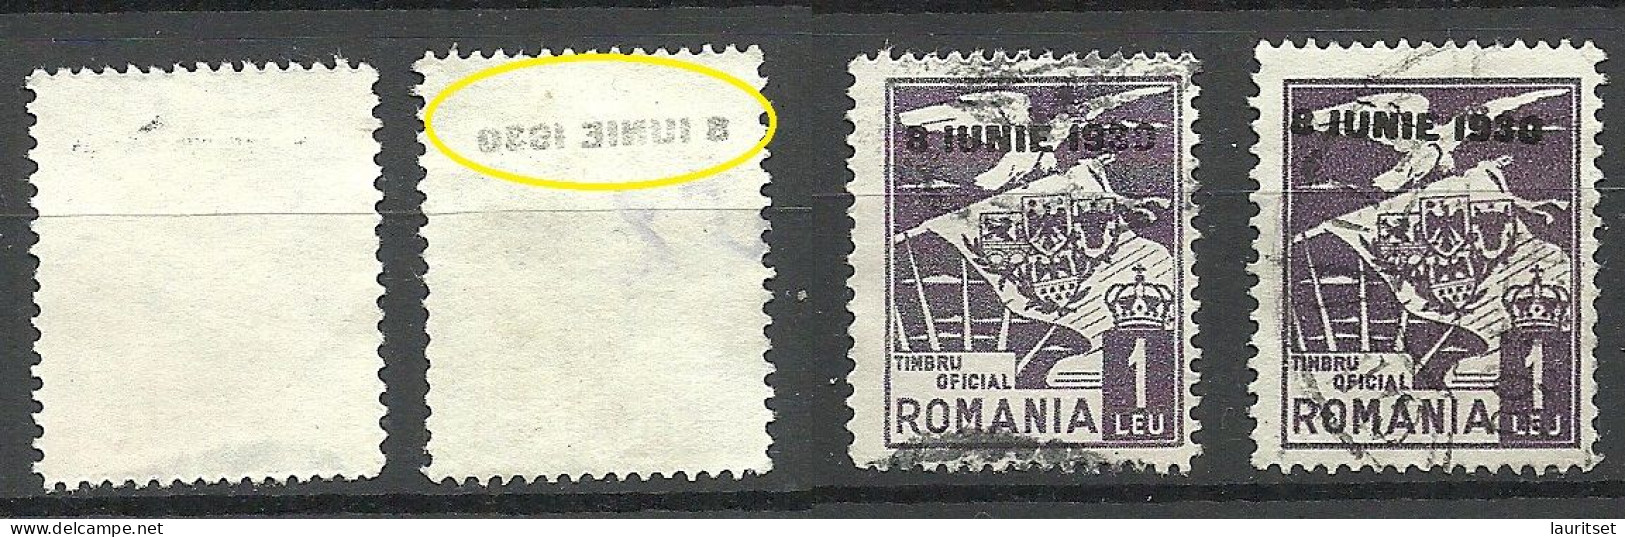 ROMANIA Rumänien 1930 Dienstmarke Normal + Variety Set Off Of OPT Abklatsch D. Aufdruckes - Servizio